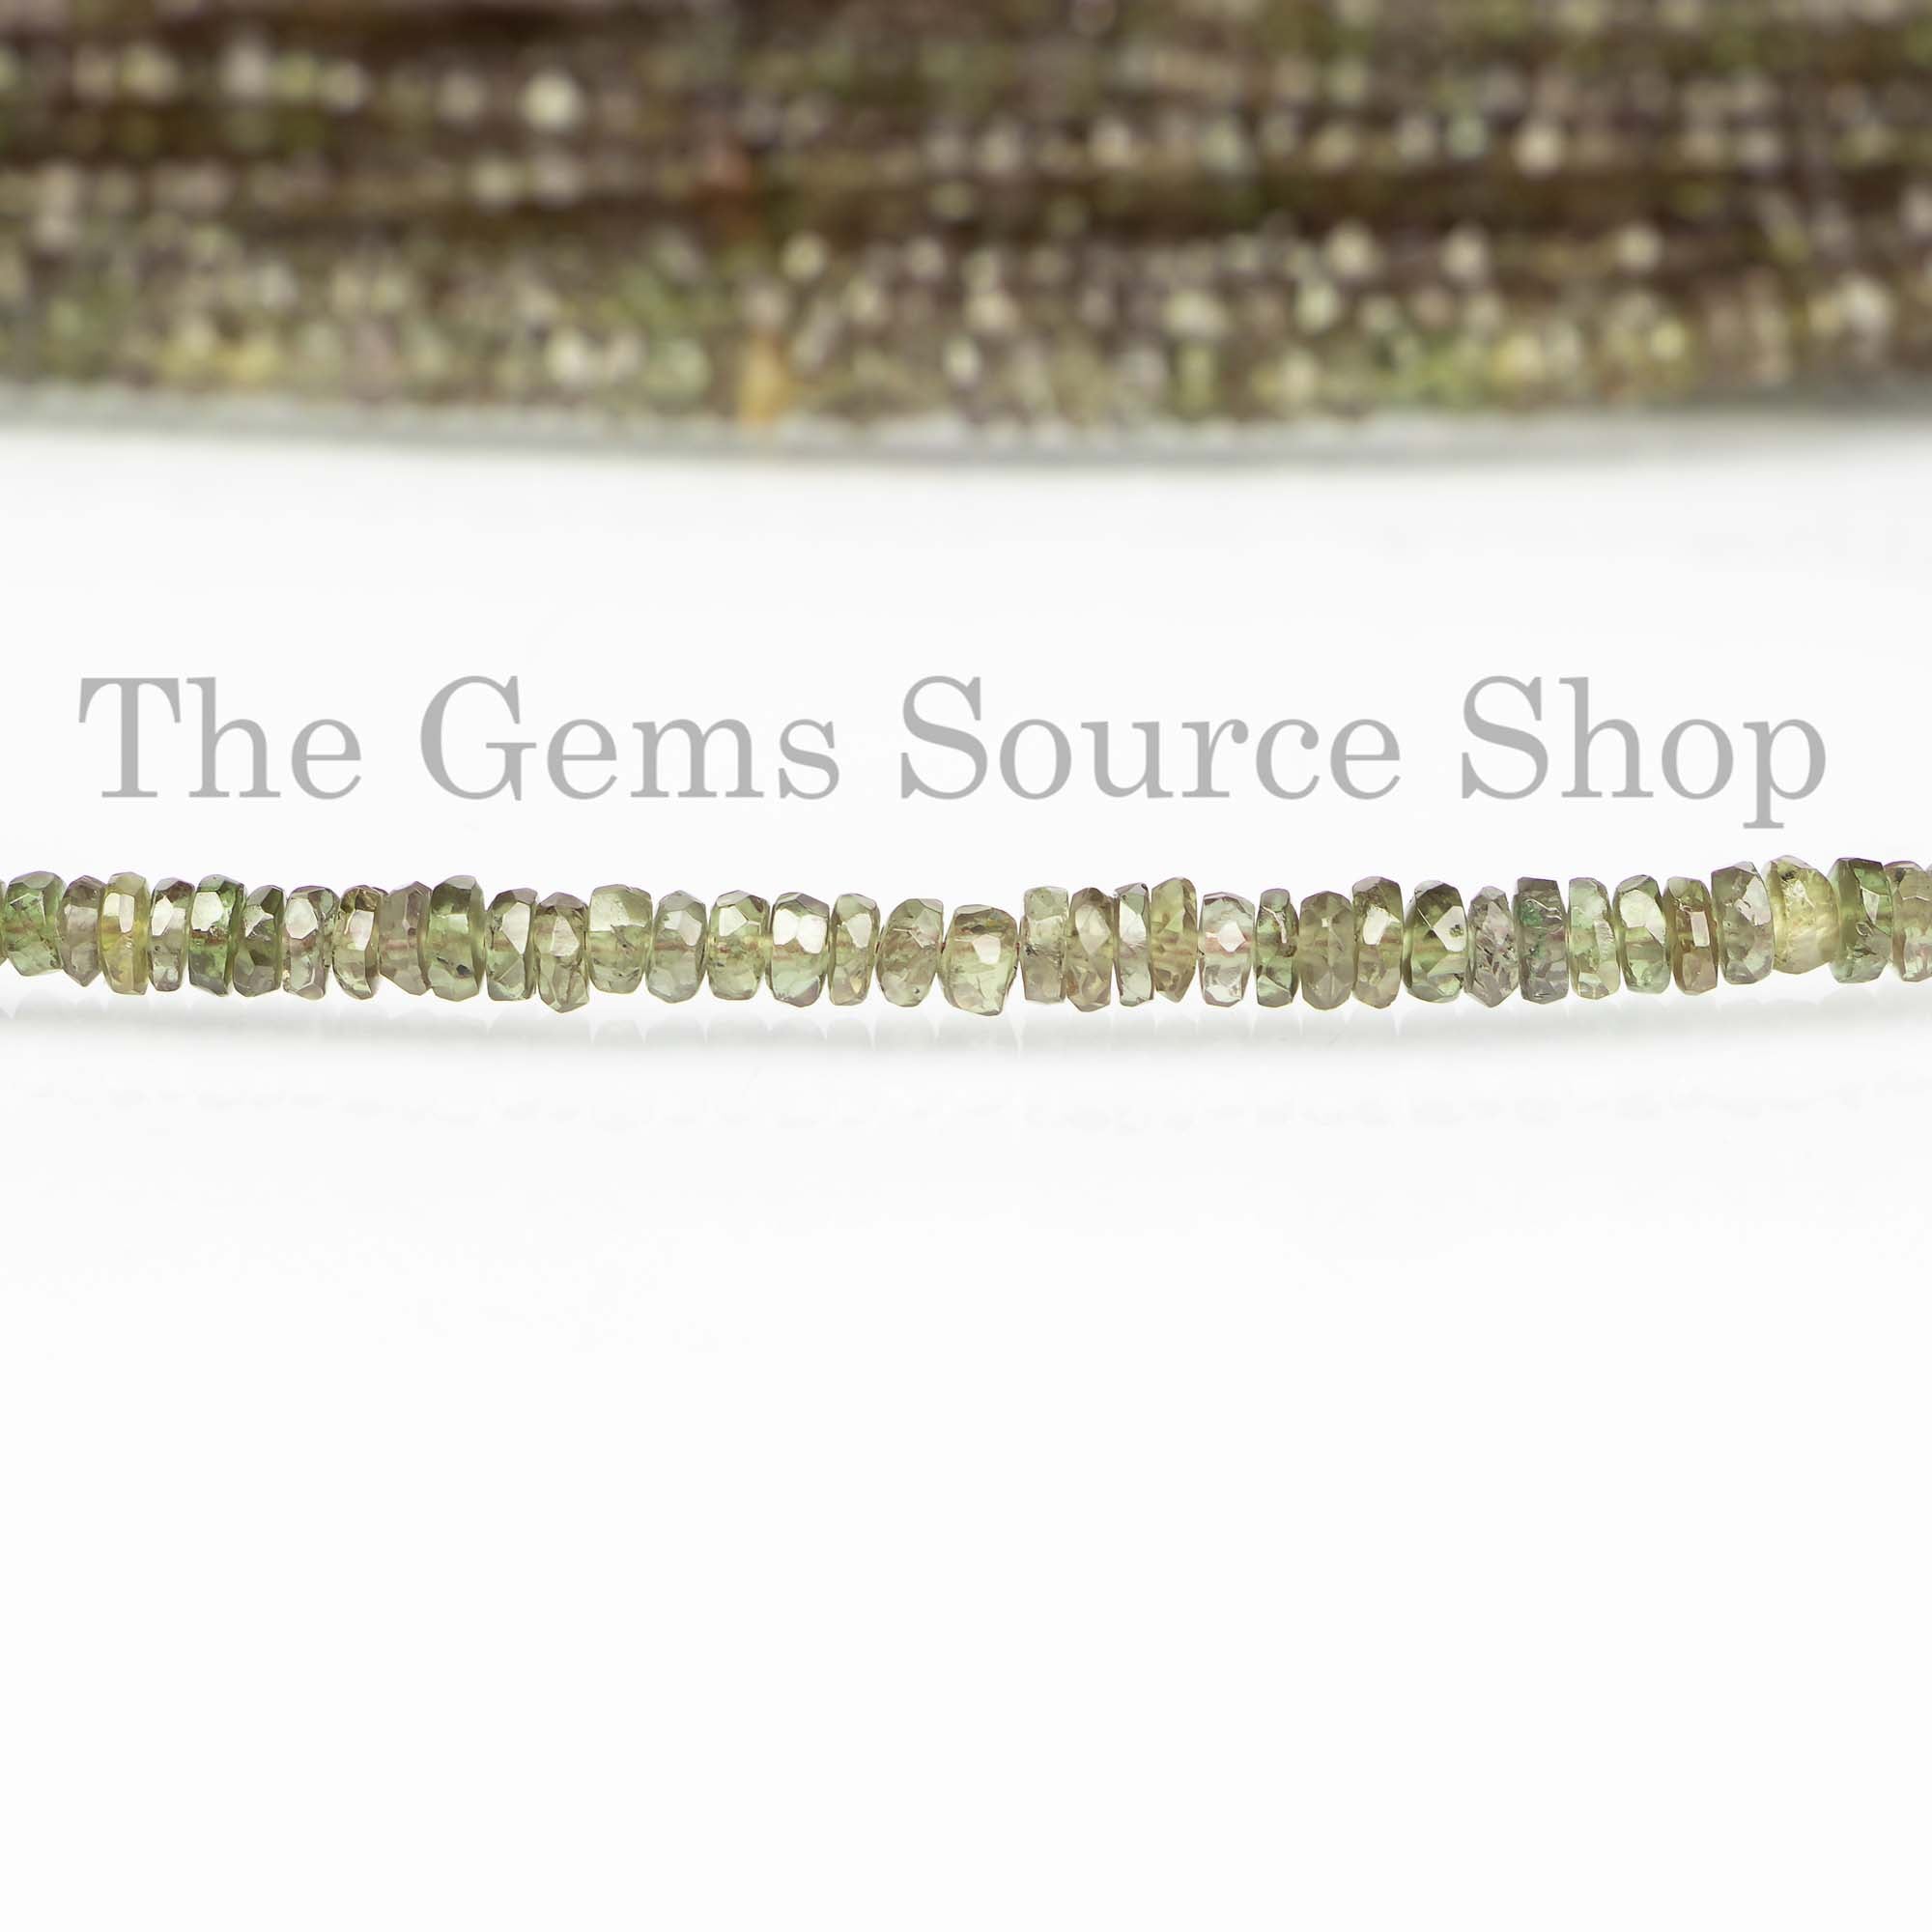 Garnet - Faceted Rondelles – The Bead Shop